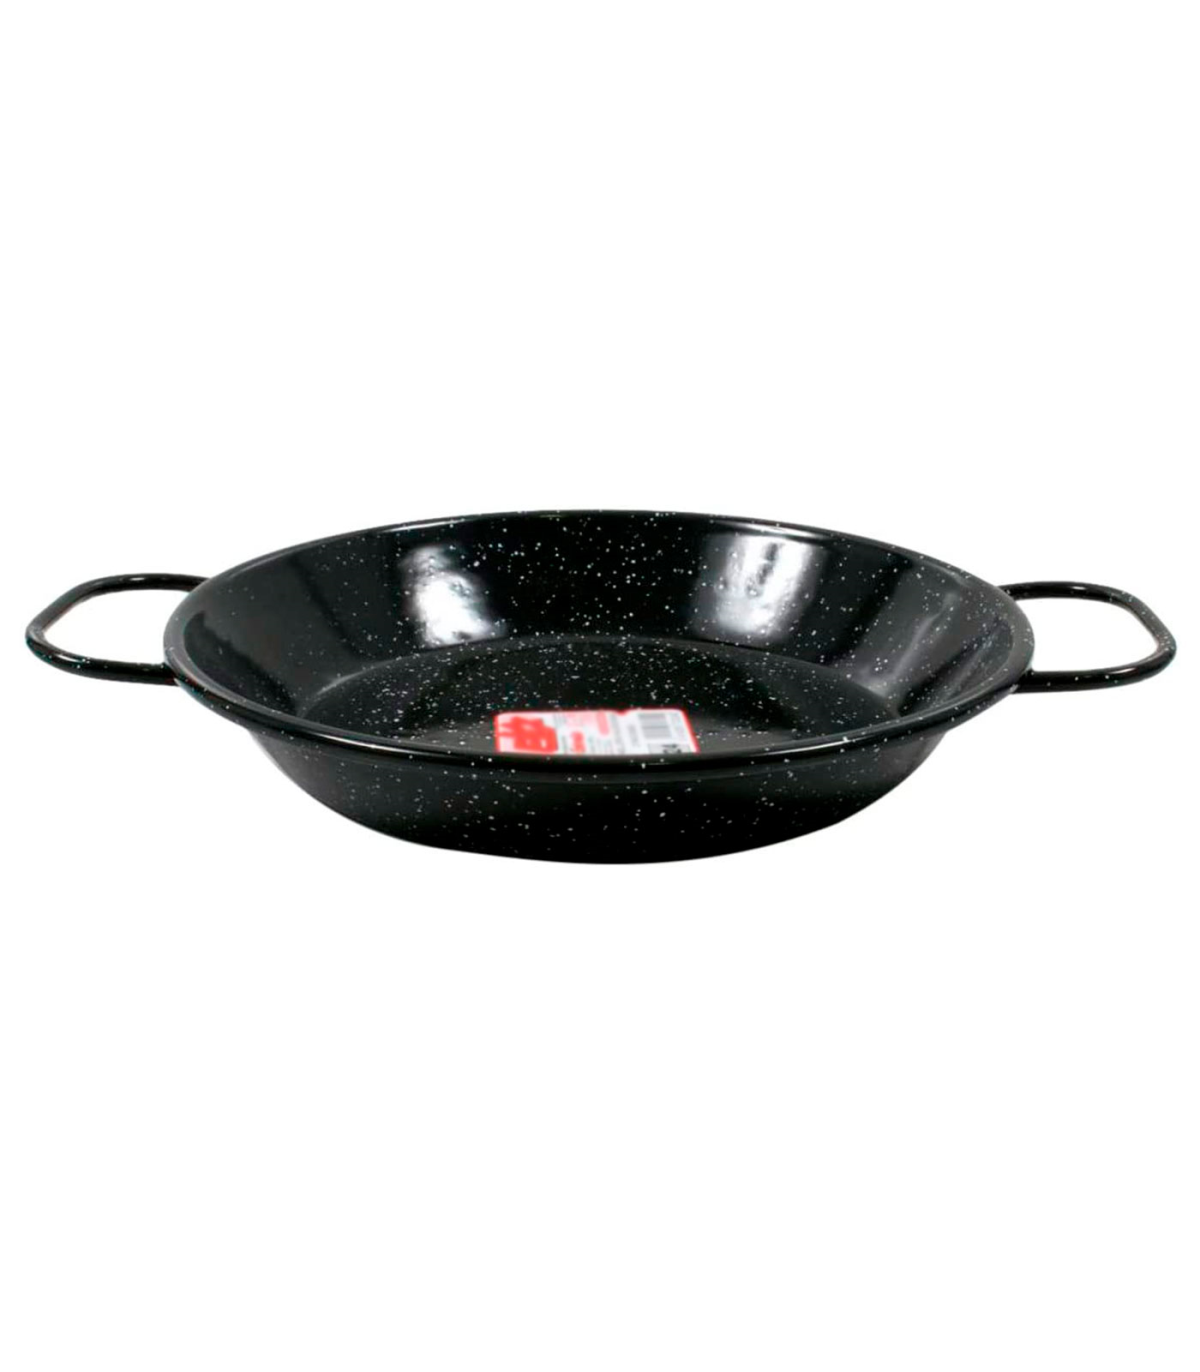 Tradineur - Paellera valenciana de acero esmaltado 24 cm, 2 raciones, color  negro, cocinar arroces, apta para gas, vitrocerámica